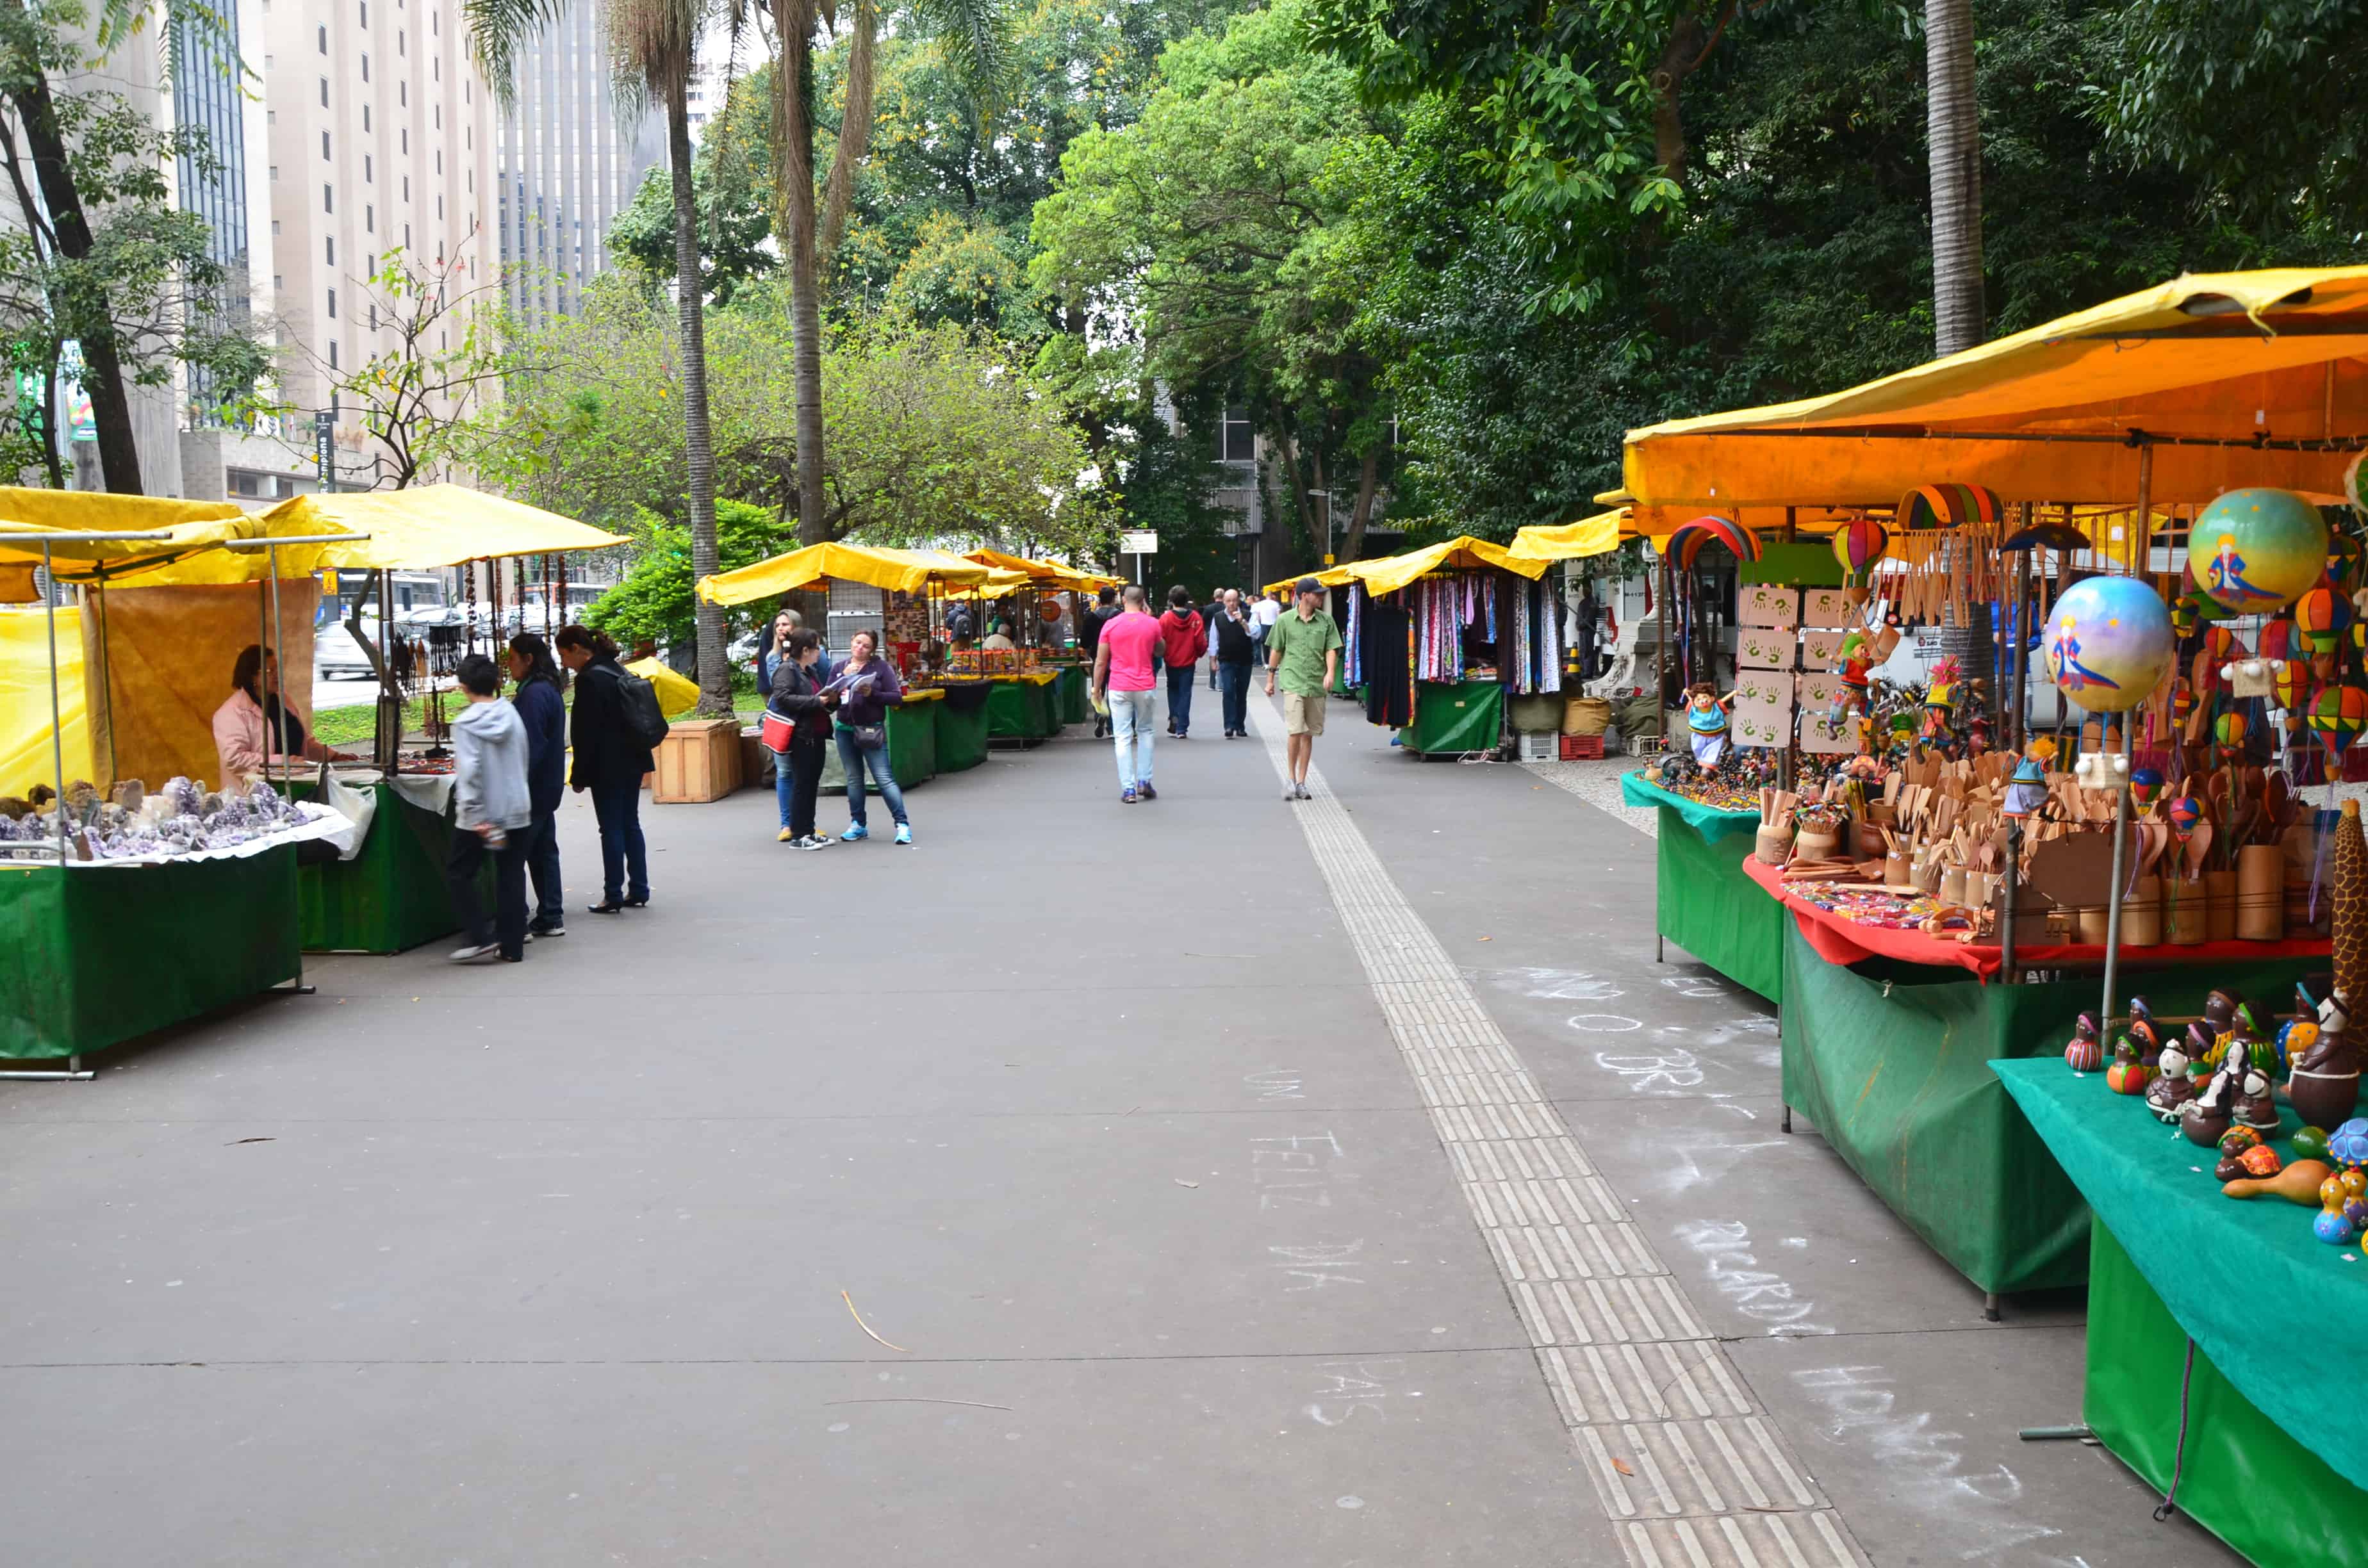 Craft market in São Paulo, Brazil